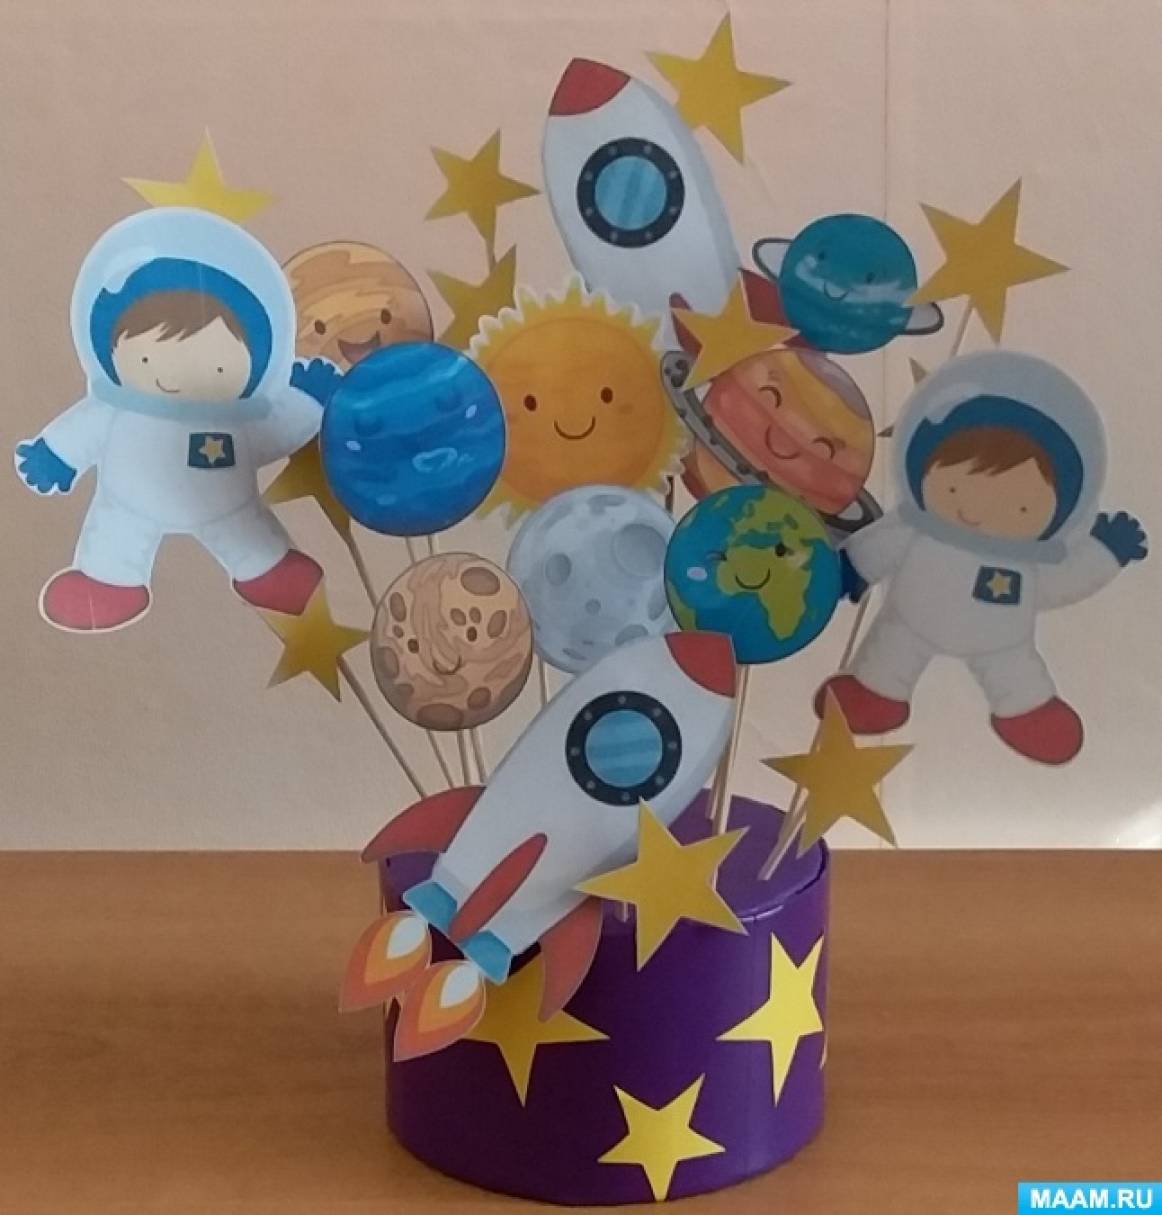 Публикация «Детские поделки на День космонавтики своими руками» размещена в разделах